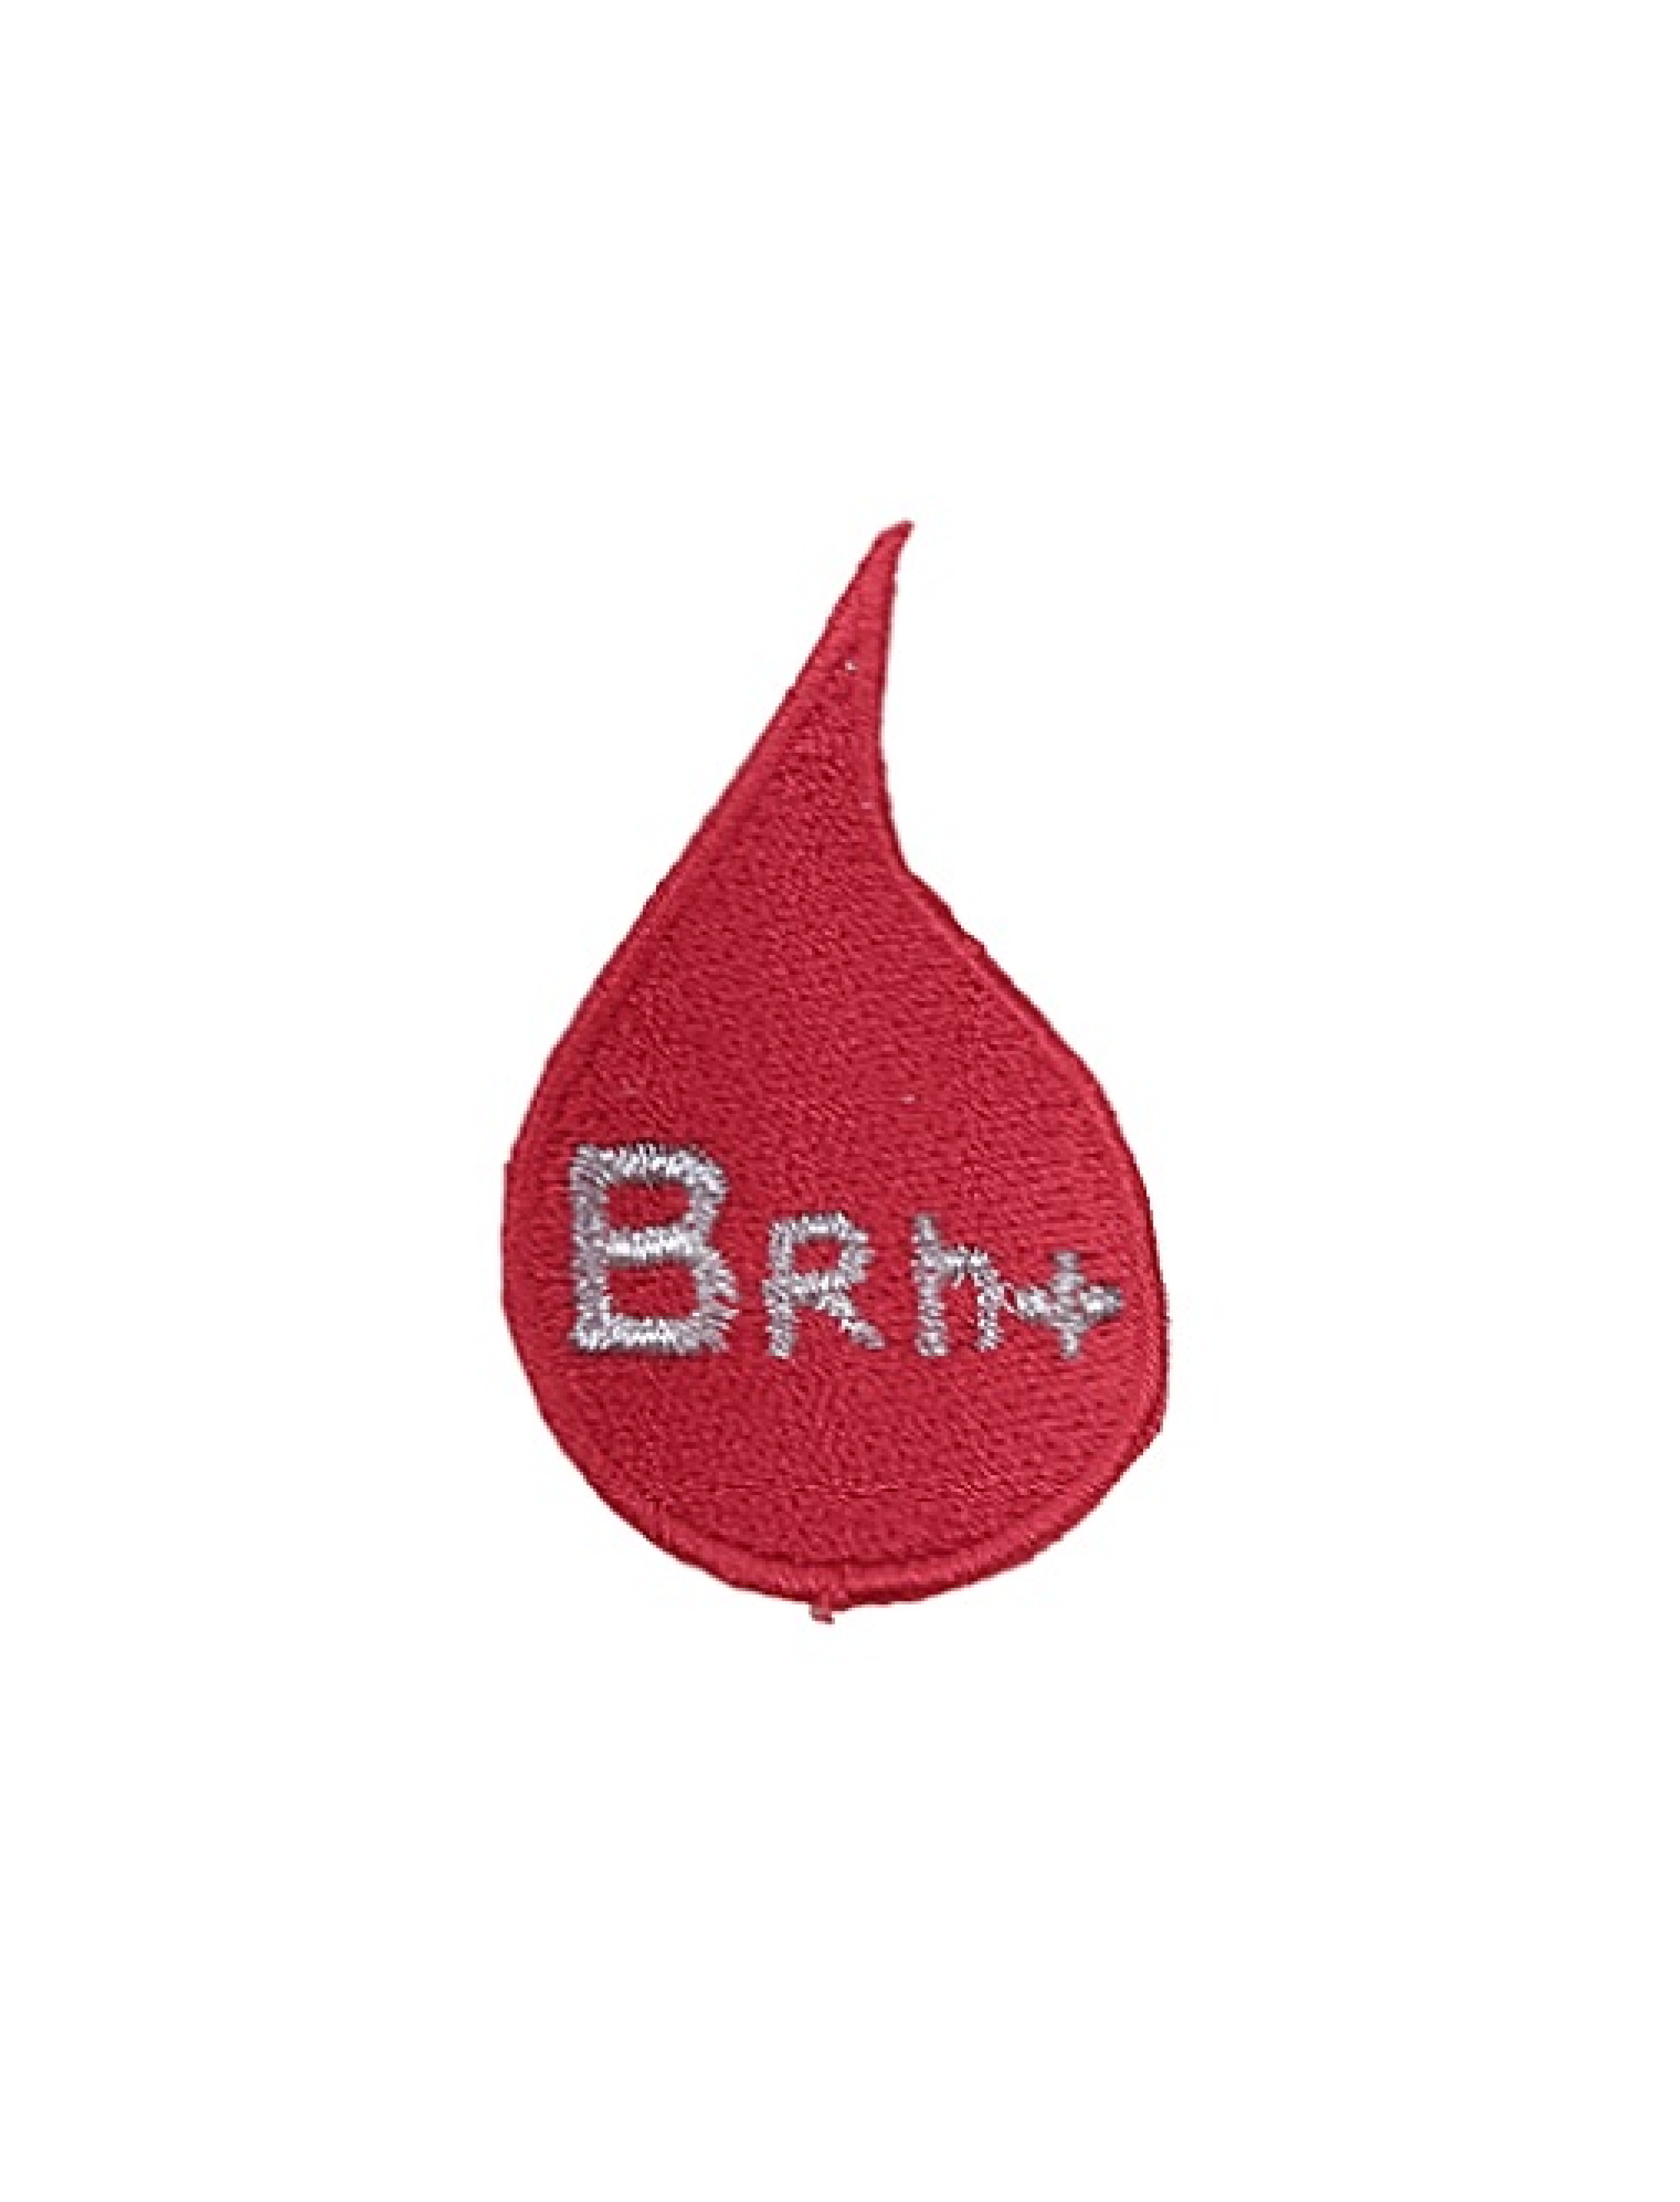 Gota de Sangue - B RH +